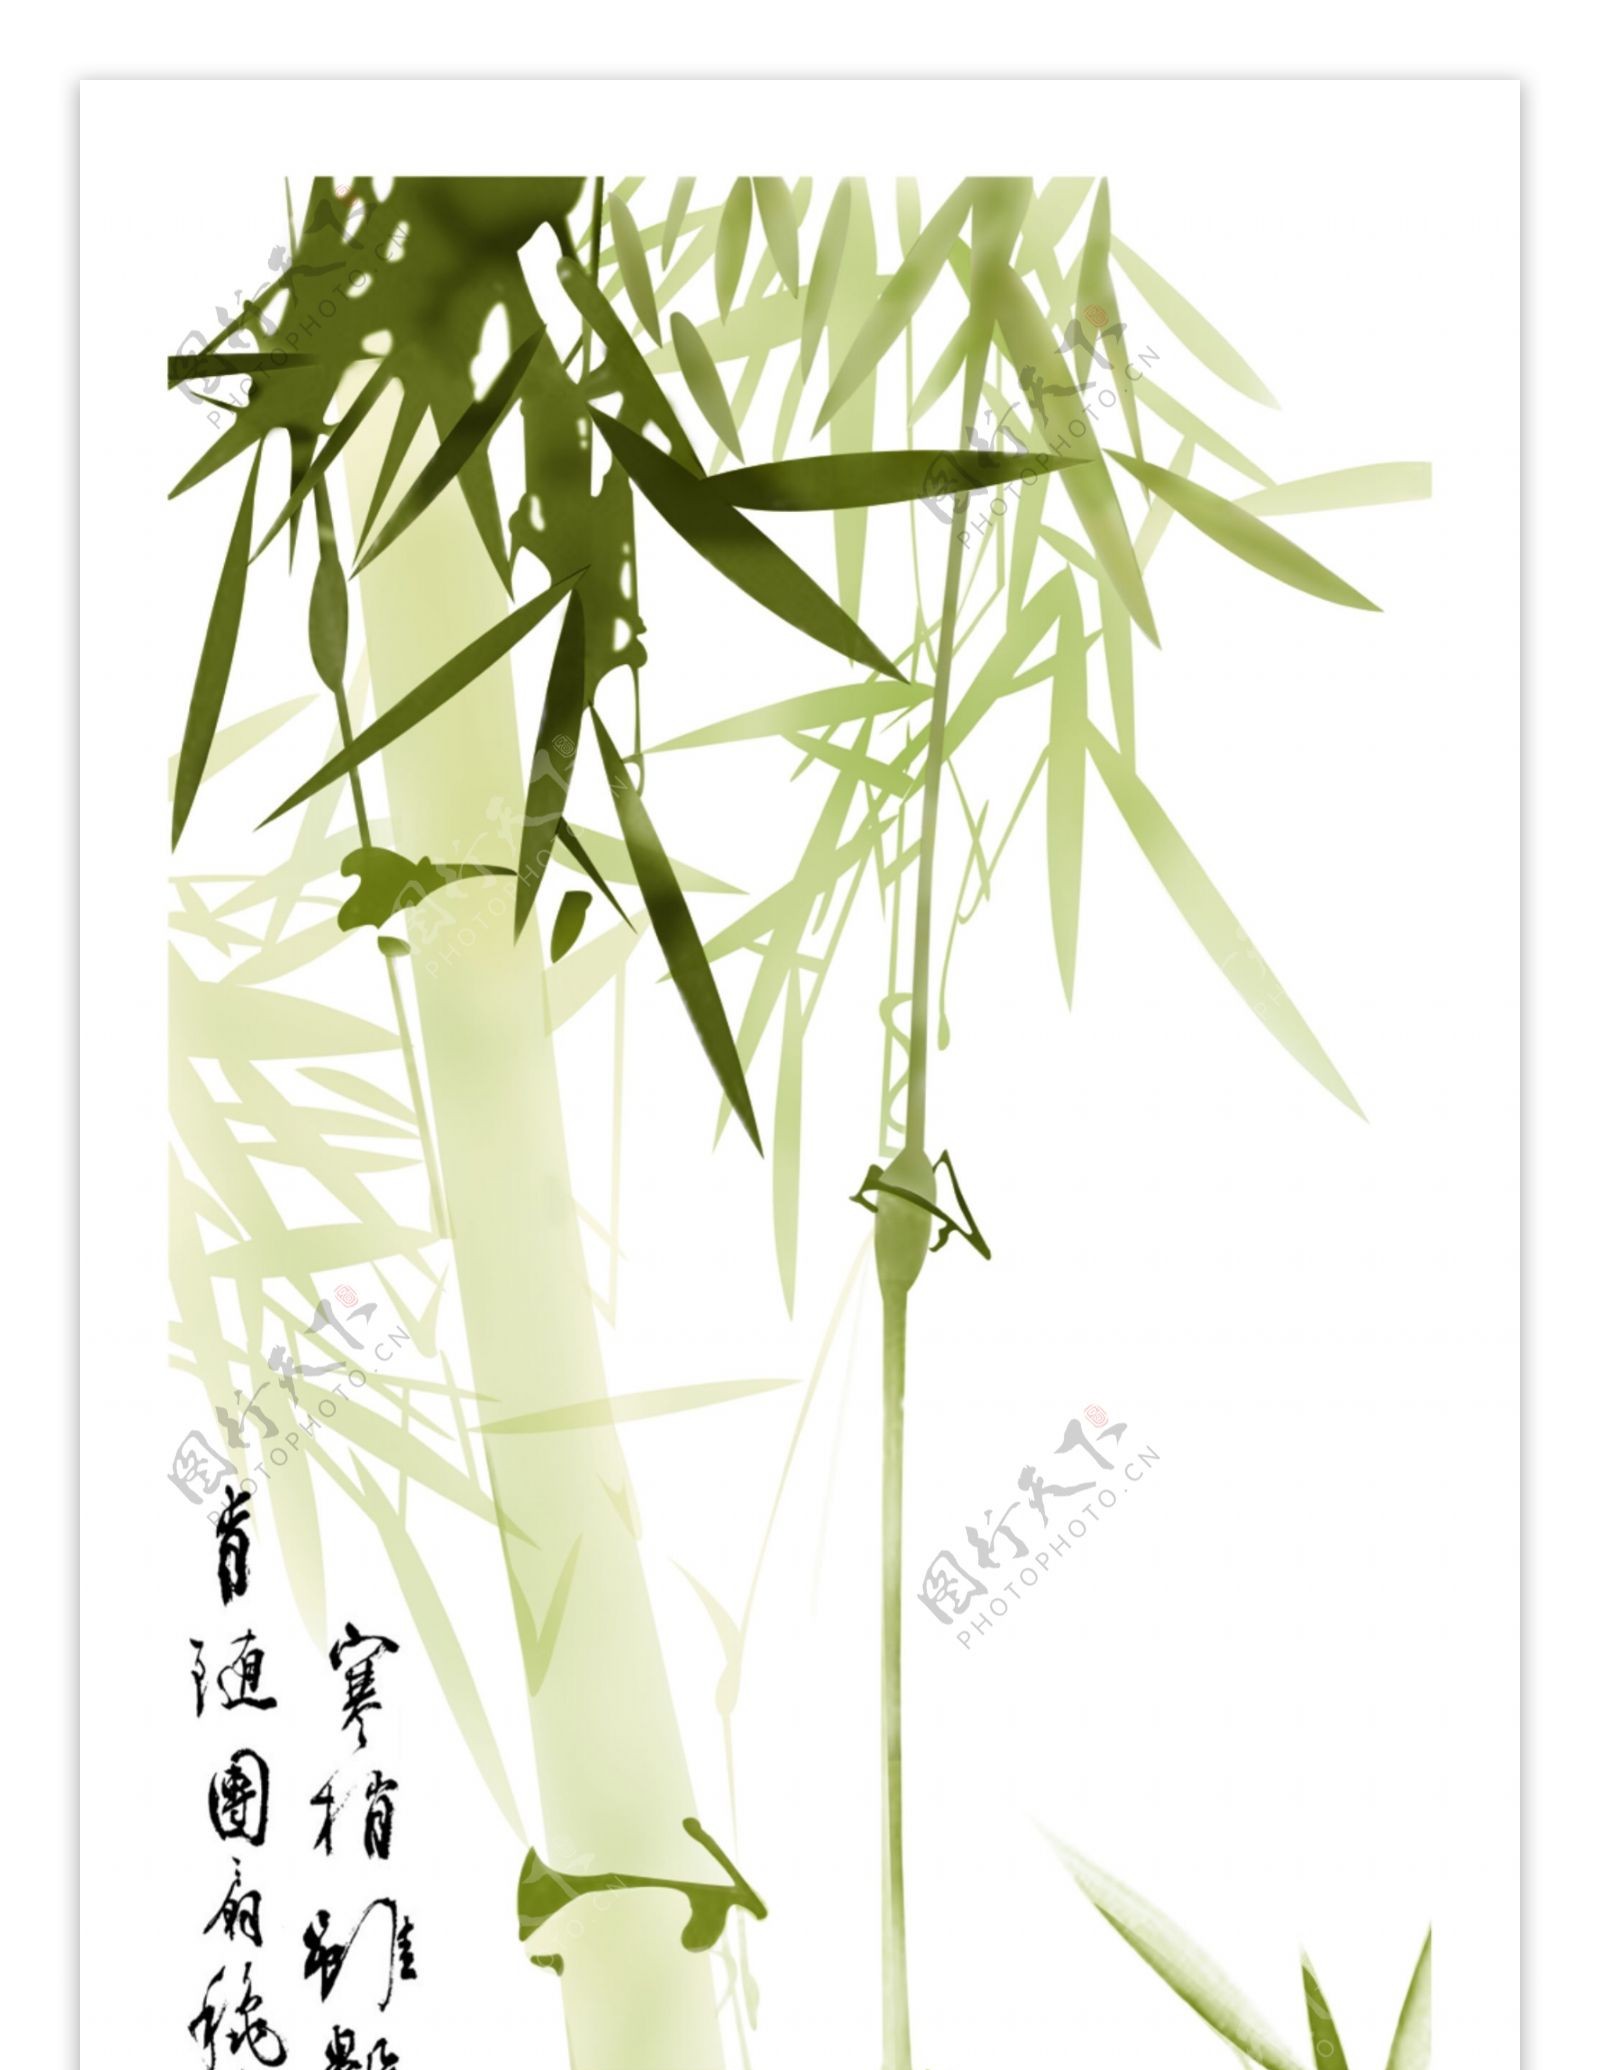 中国竹子展板图片